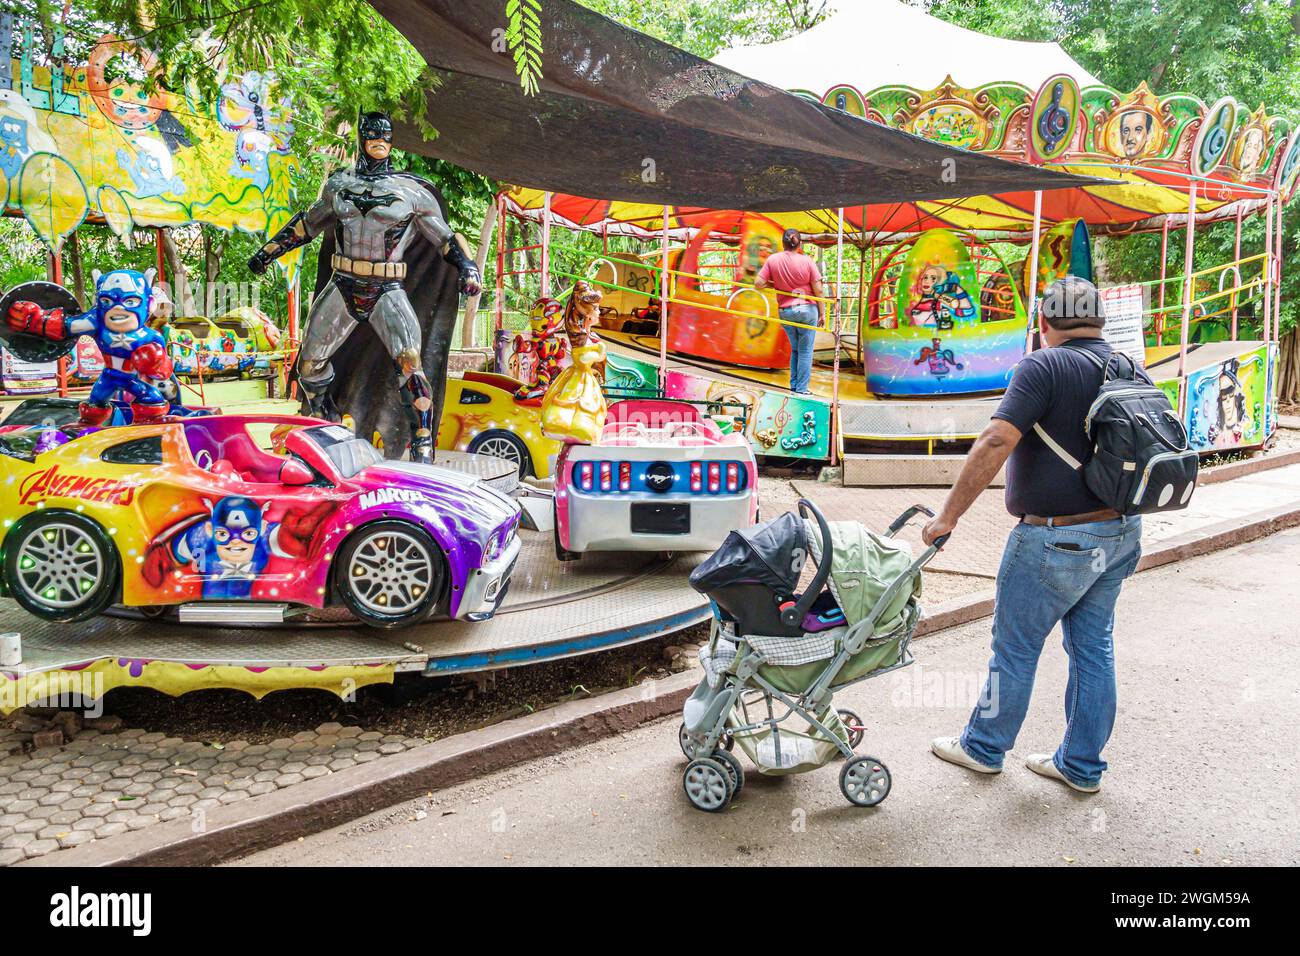 Merida Mexique, Parque Zoologico del Centenario parc public centenaire, fantaisie d'amusement, carnaval kiddie rides voitures personnalisées Batman statue, homme mal Banque D'Images